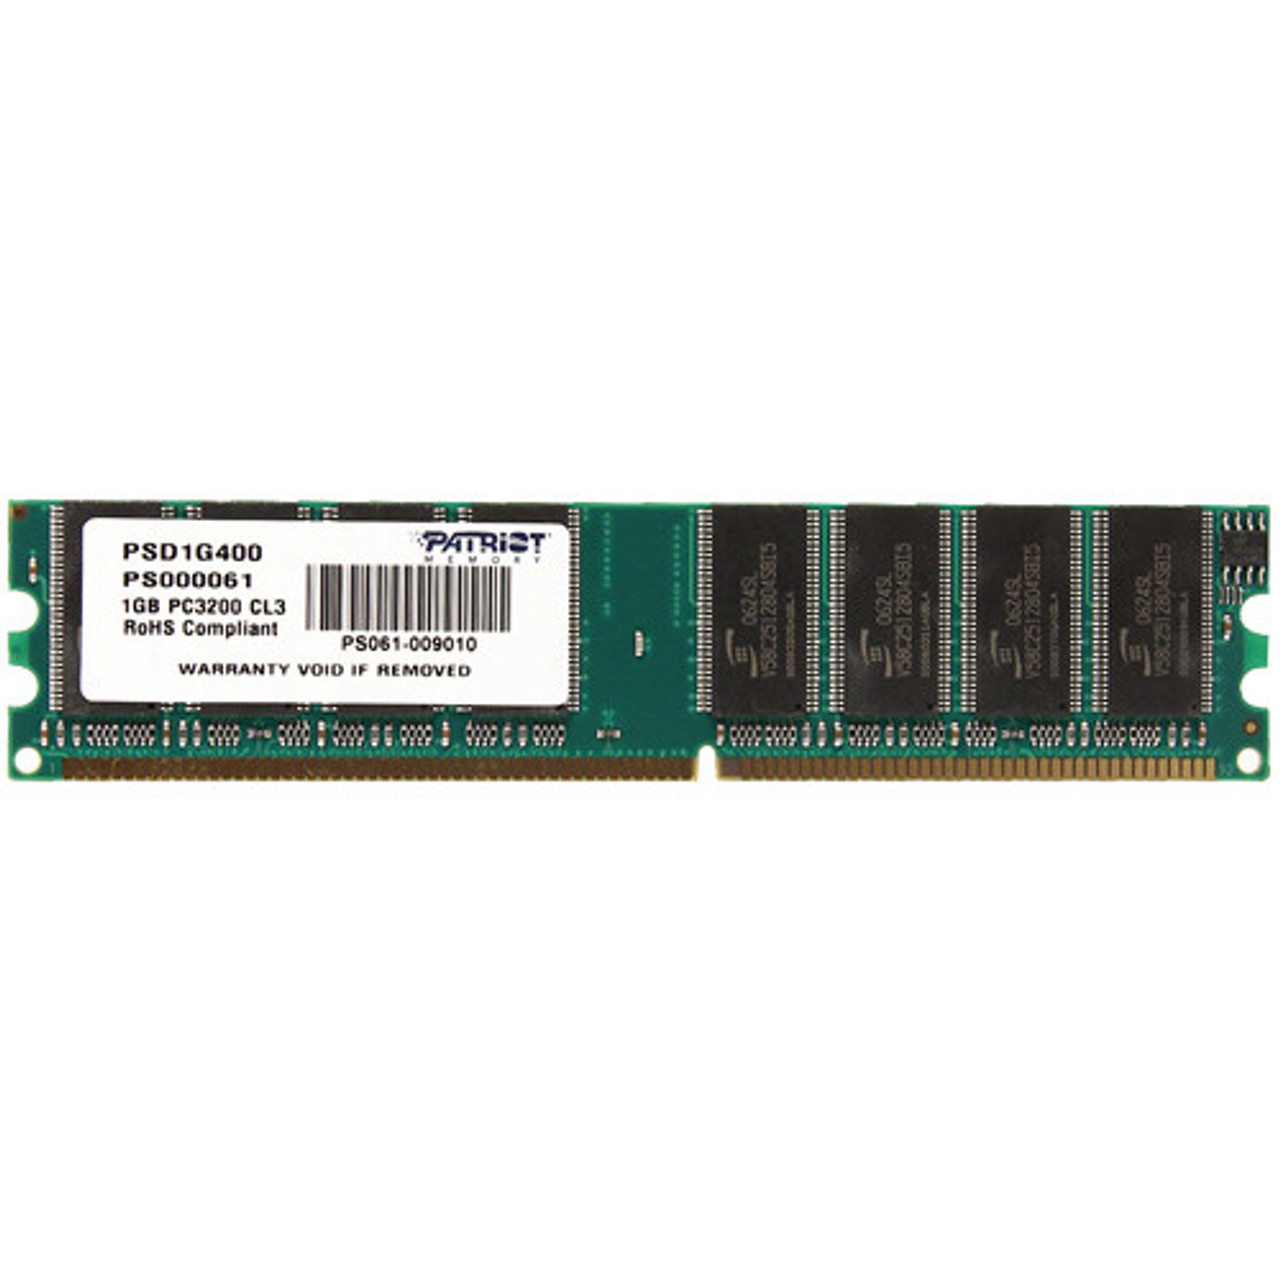 GB 400MHz DIMM memory module